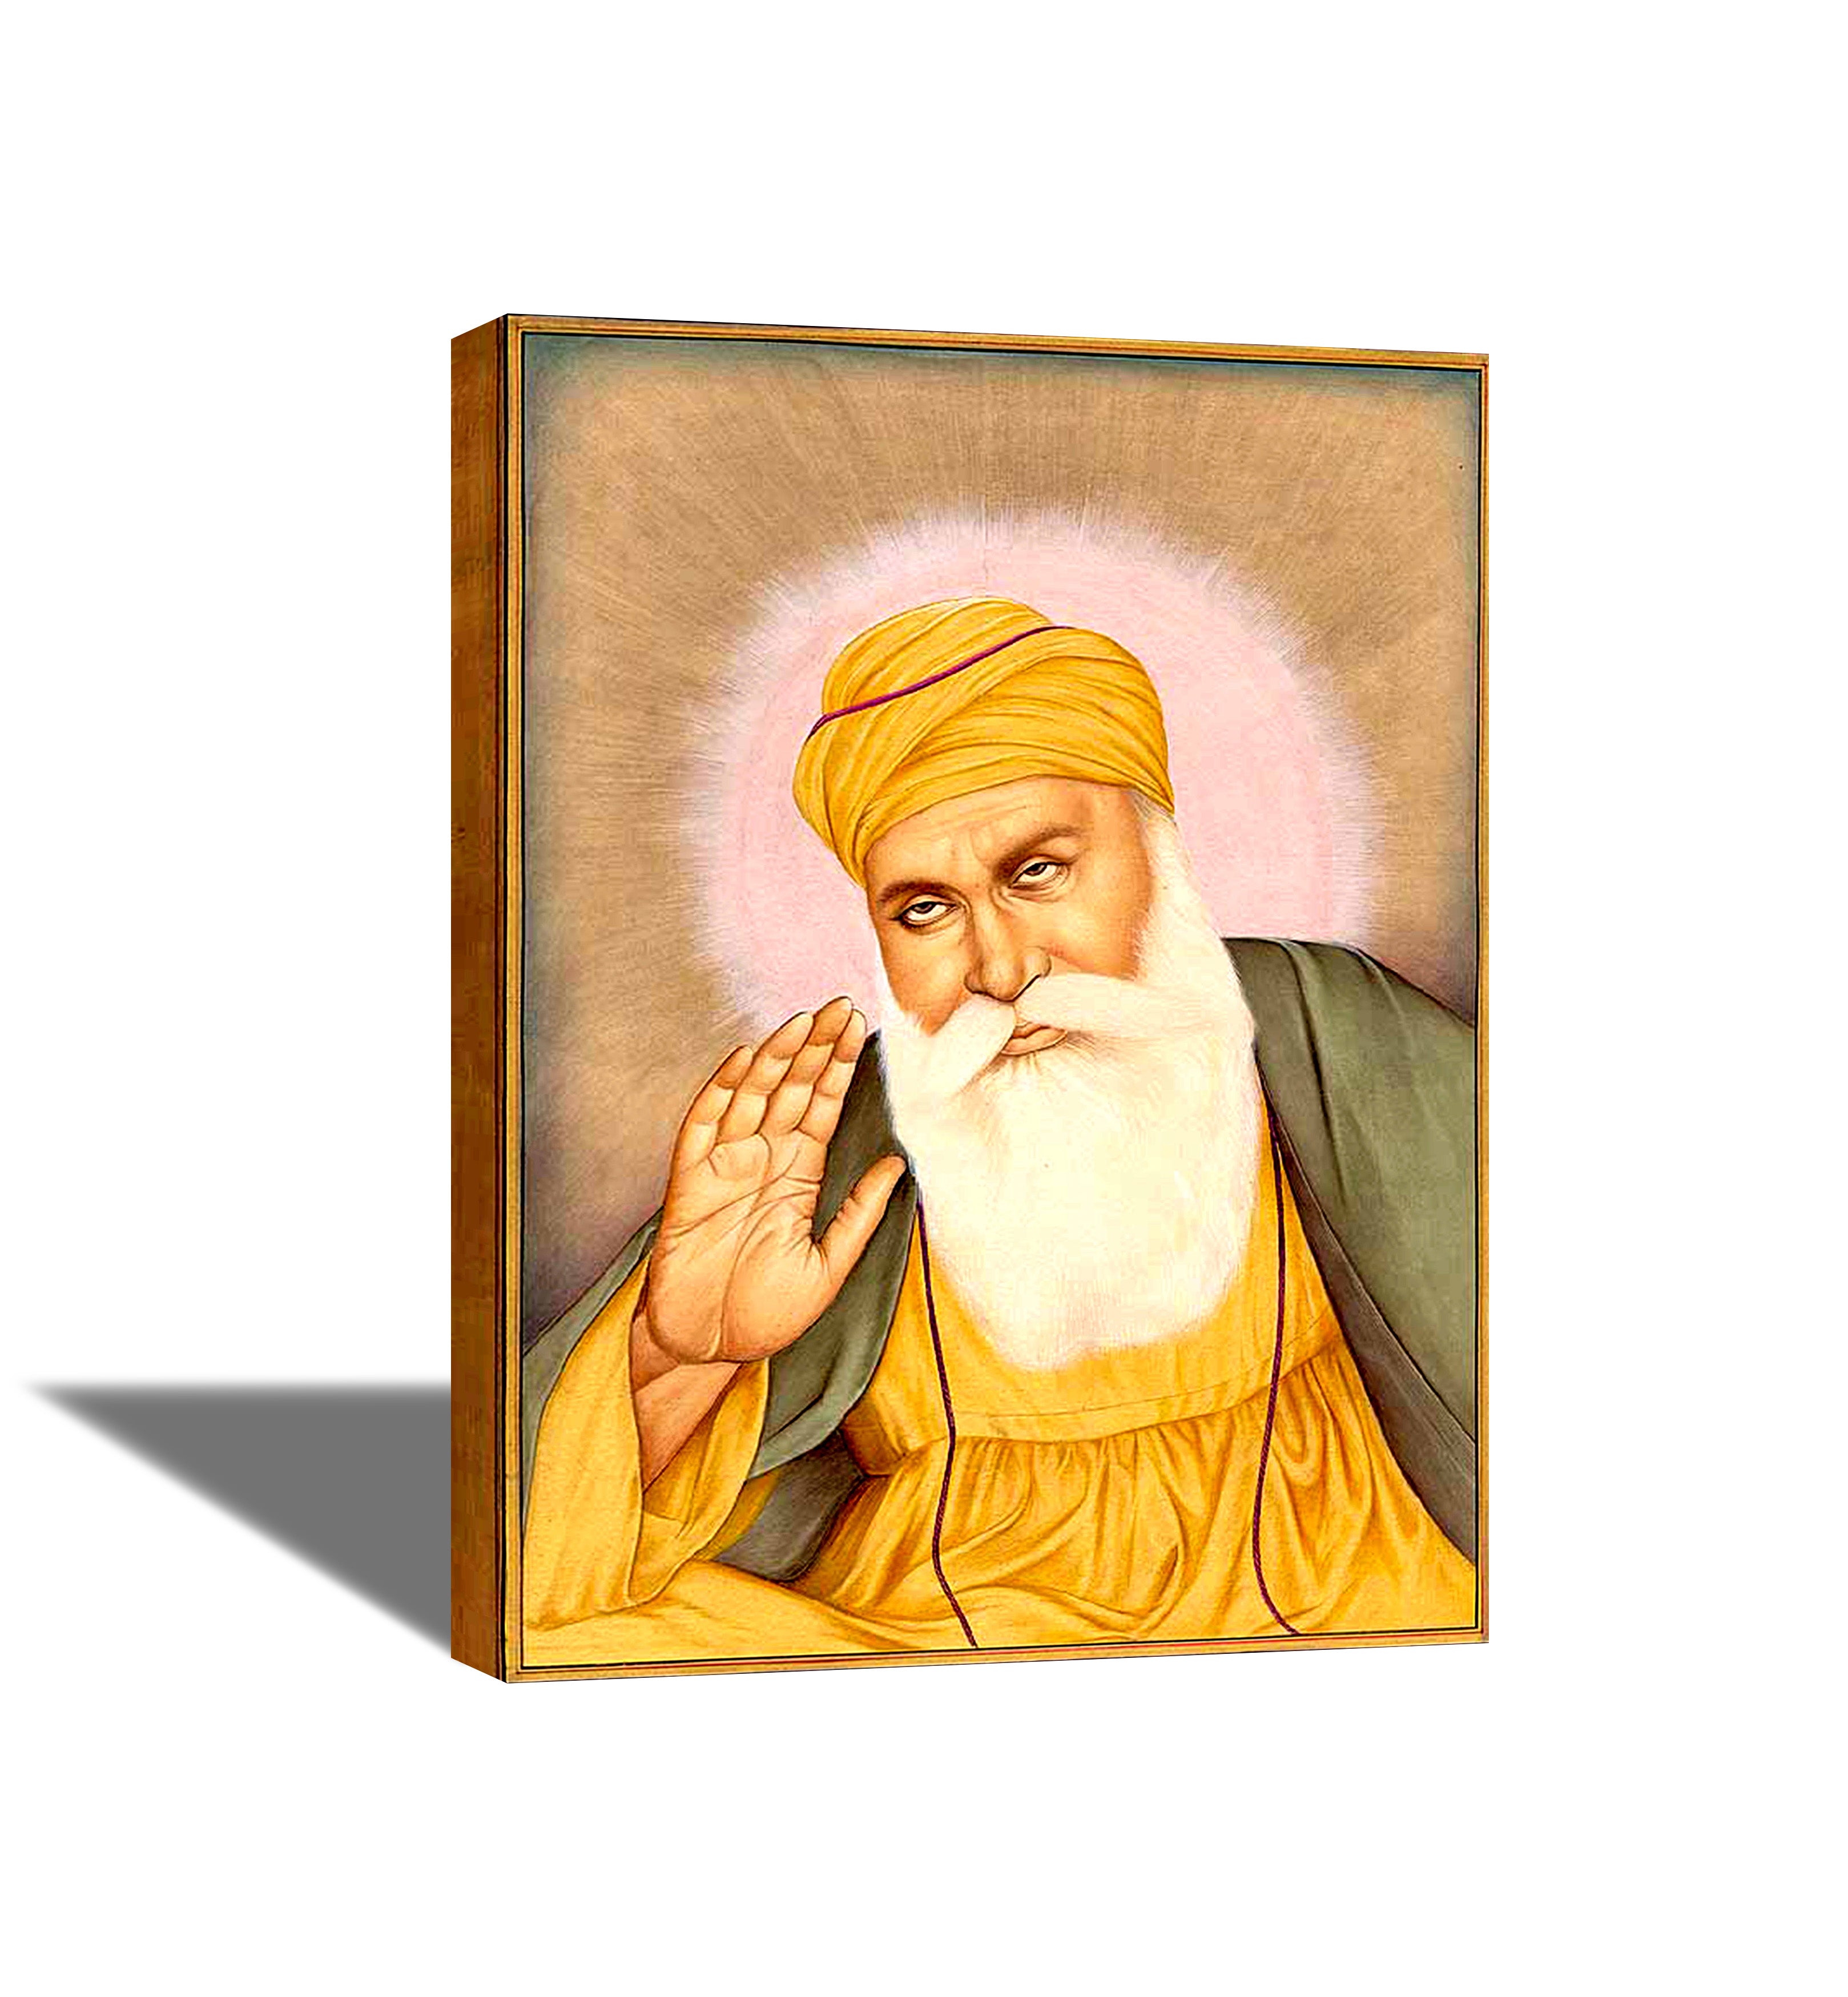 Guru Nanak dev ji